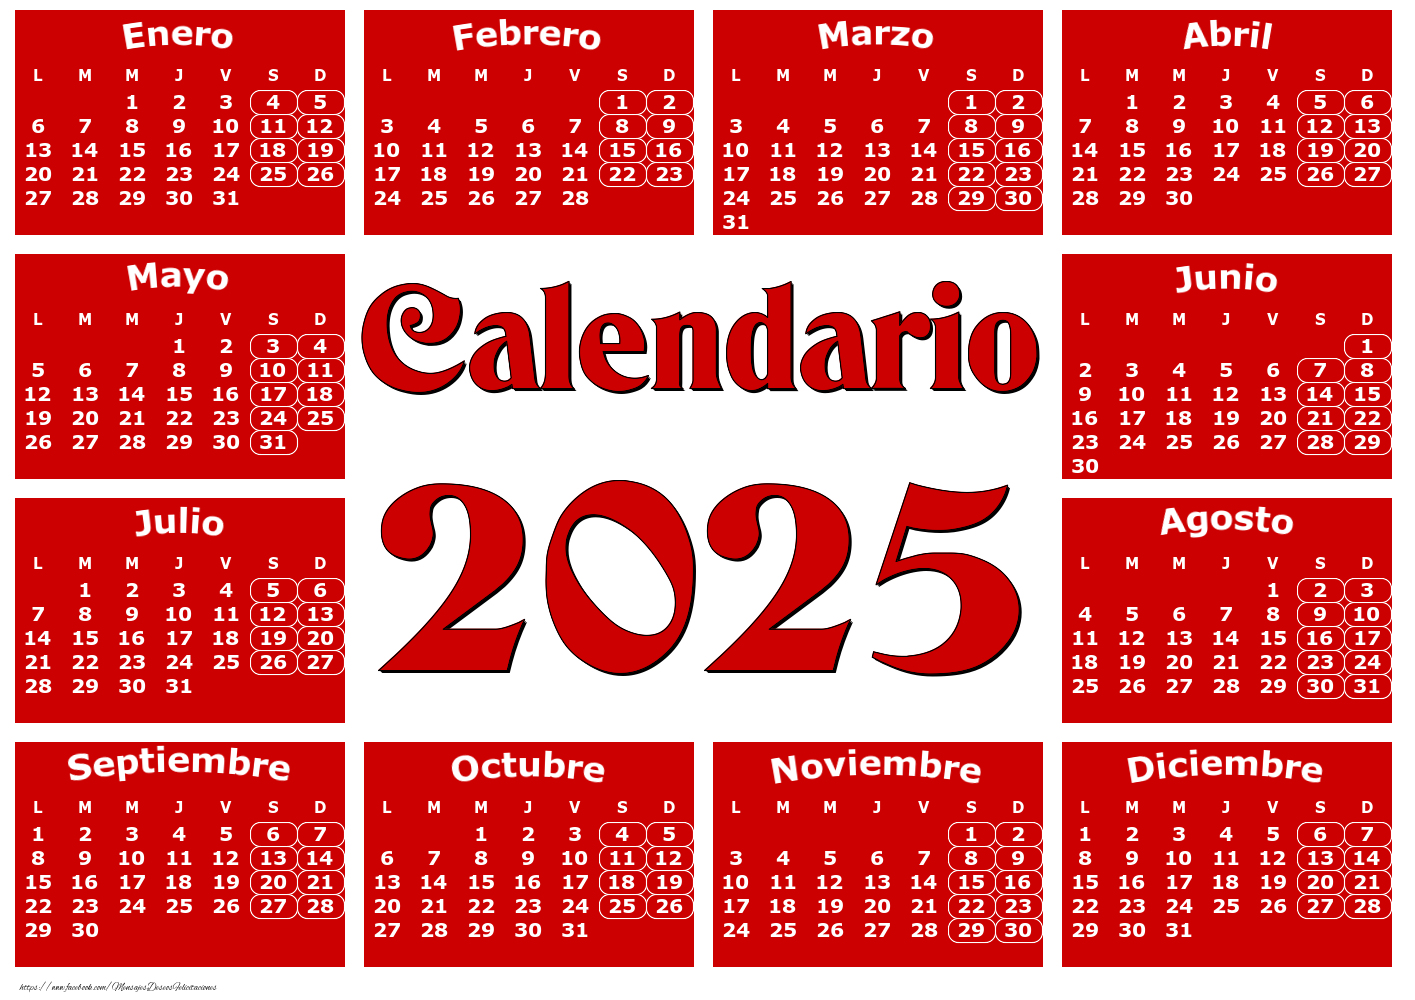 Calendarios Calendario 2025 - Rojo clásico - Modelo 0020